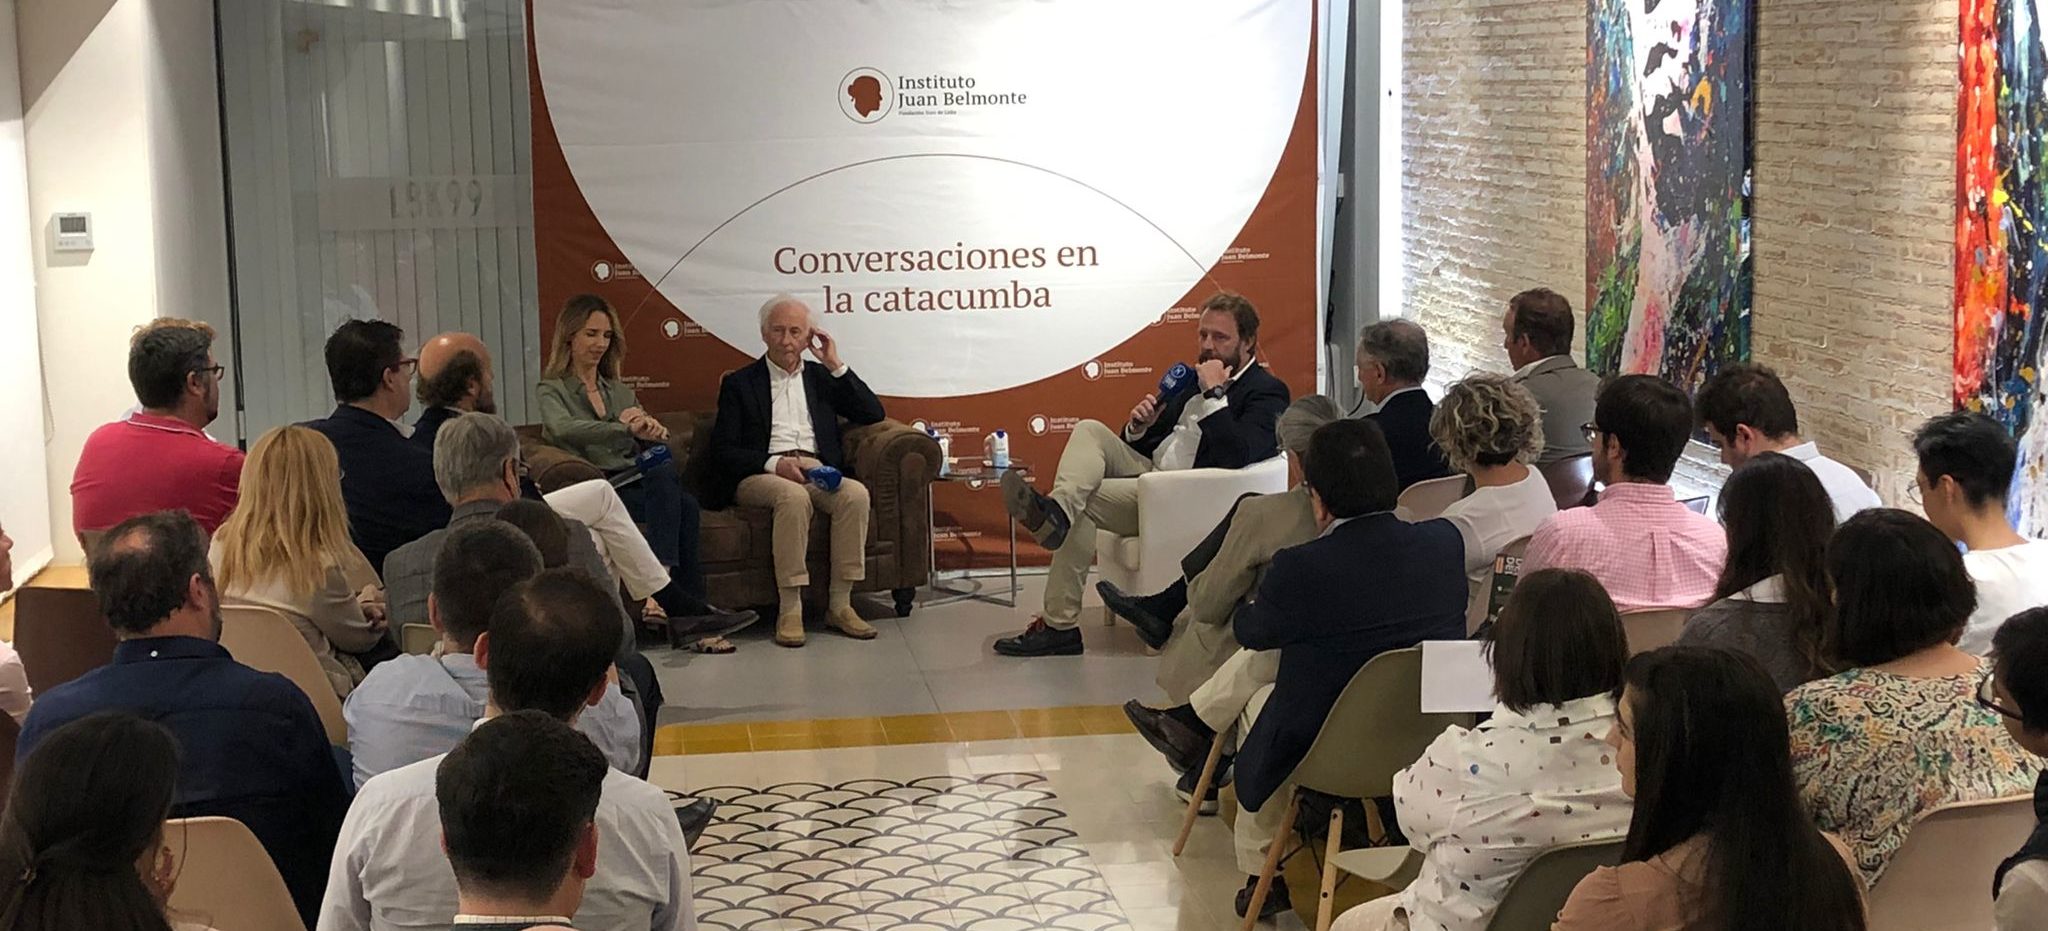 El Instituto Juan Belmonte dedica el mes de febrero al “Decálogo en defensa de la tauromaquia” de Boadella